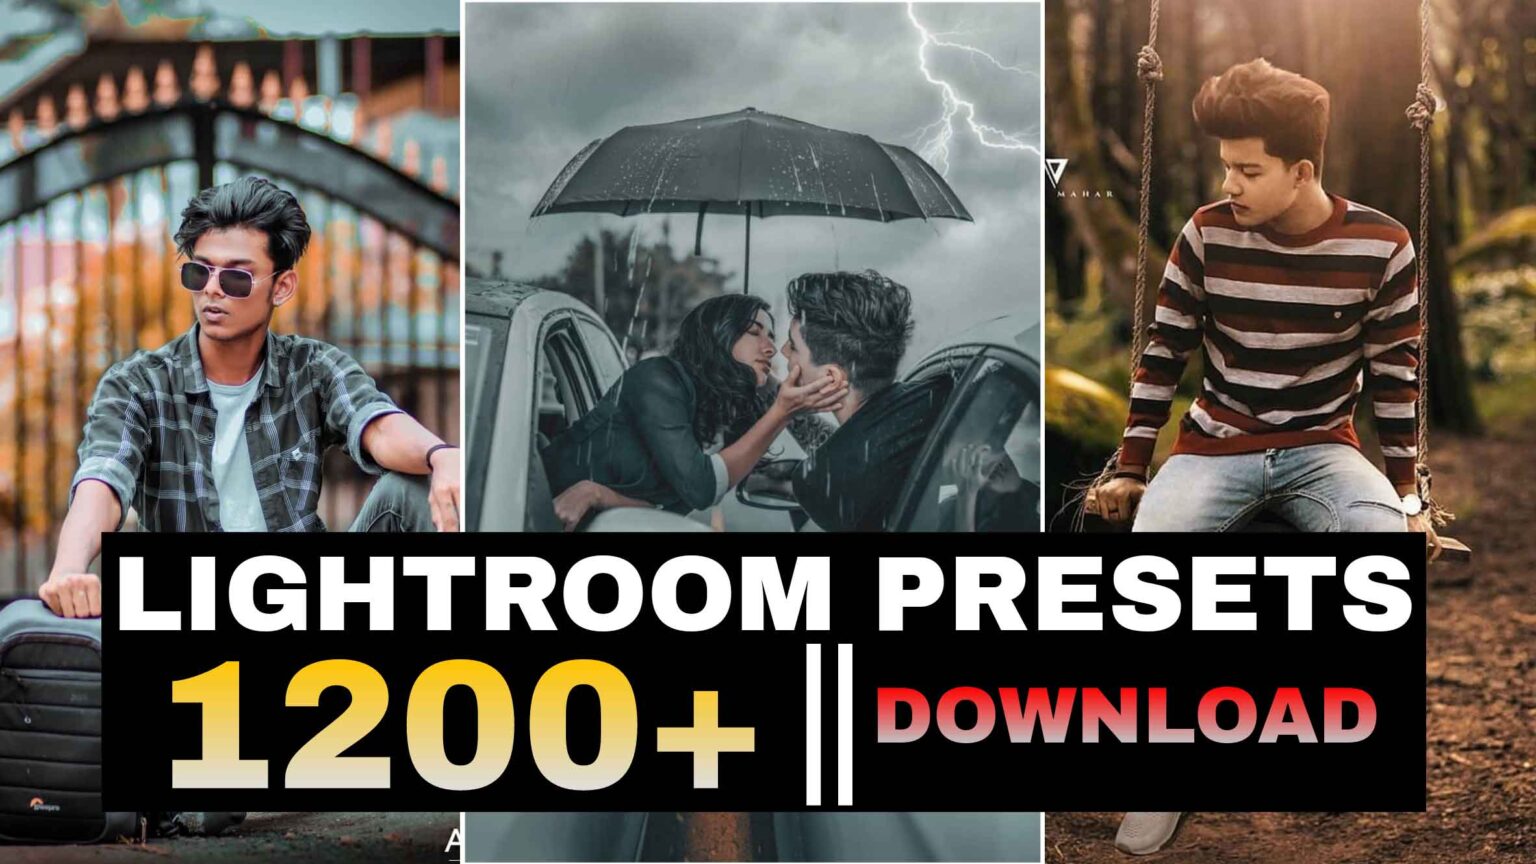 1200+ Lightroom Presets free download | Alfaz Creation ...